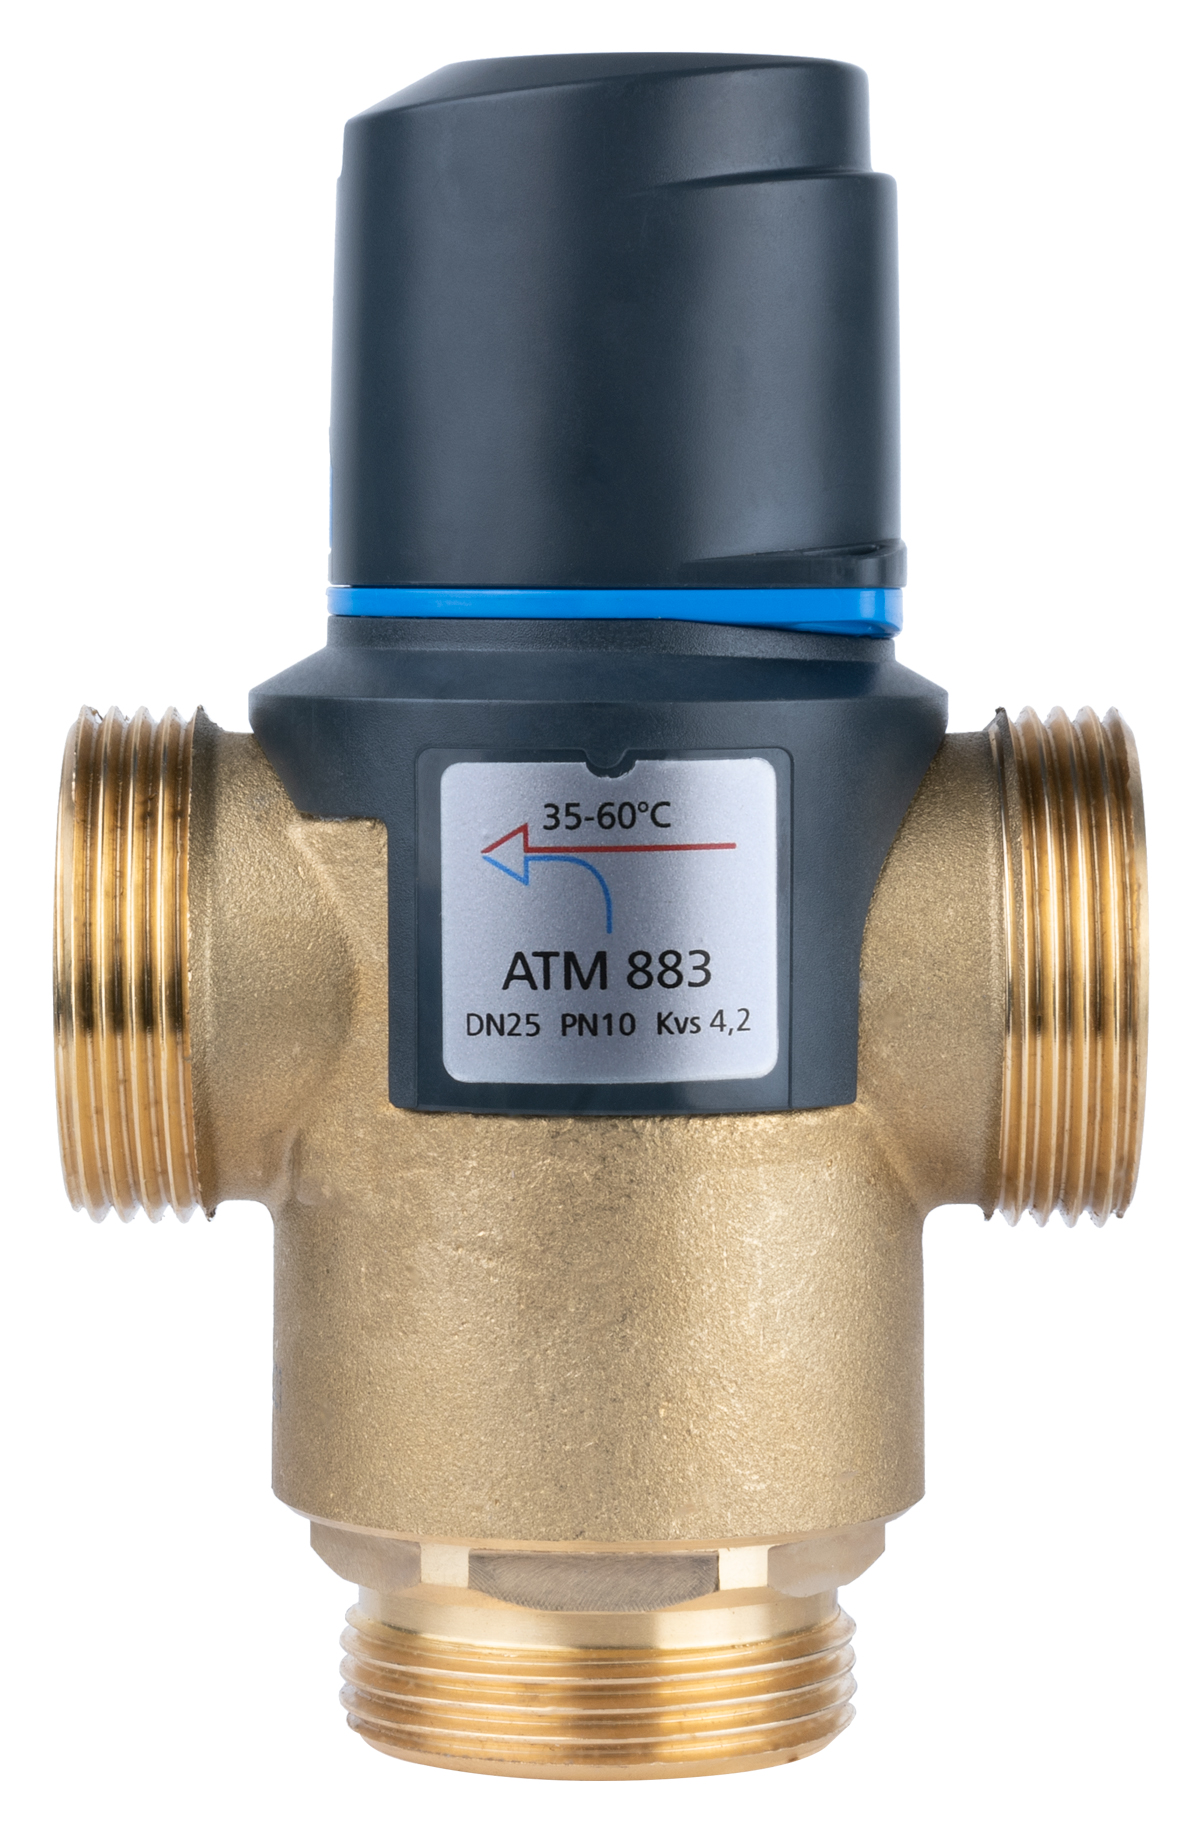 Termostatyczny zawór mieszający ATM 883, DN25, G1 1/4", 35÷60°C, Kvs 4,2 m3/h